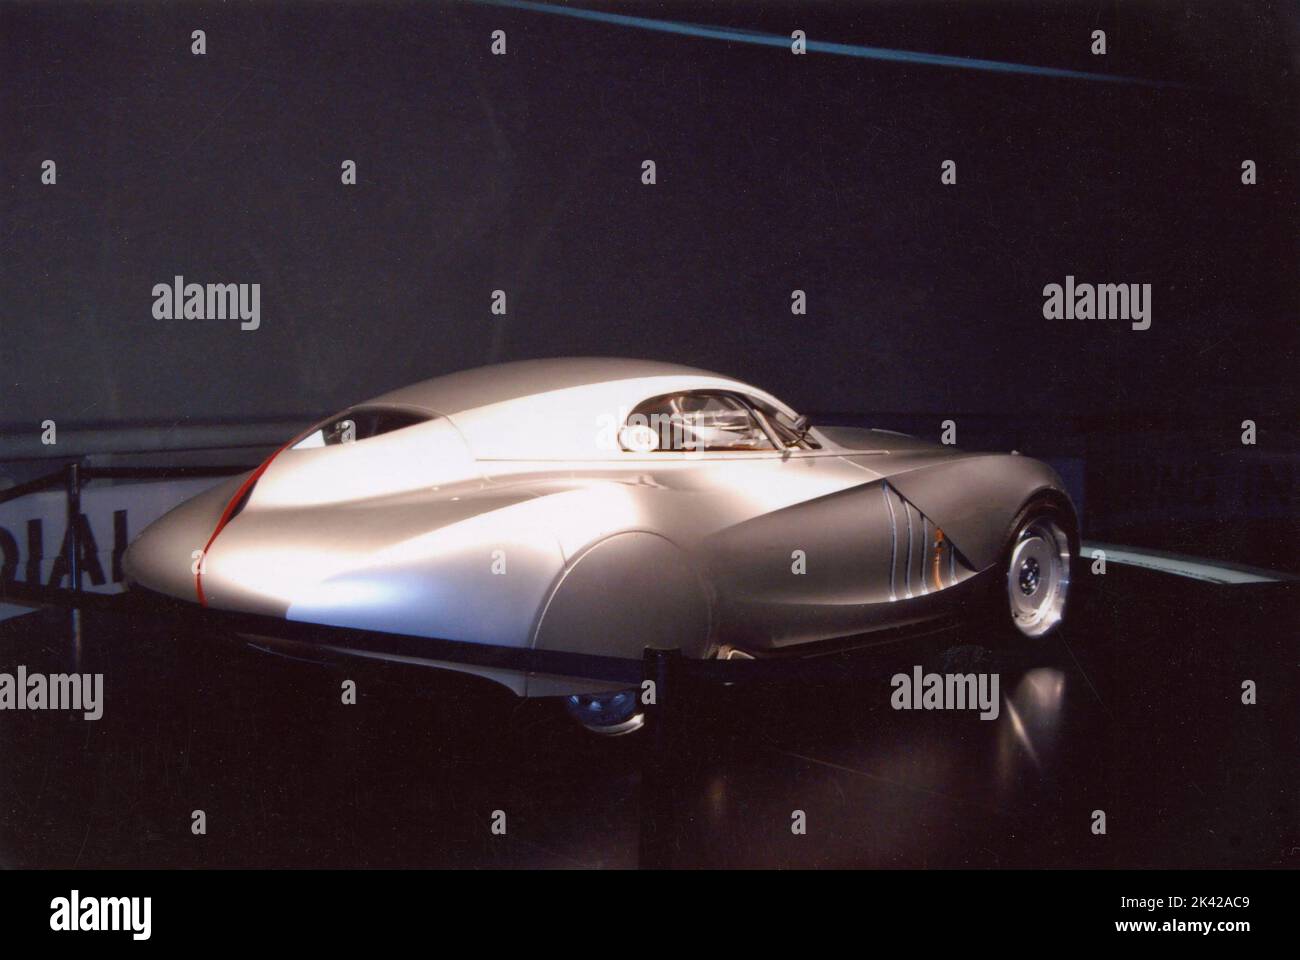 Prototype of a futuristic car, 2008 Stock Photo